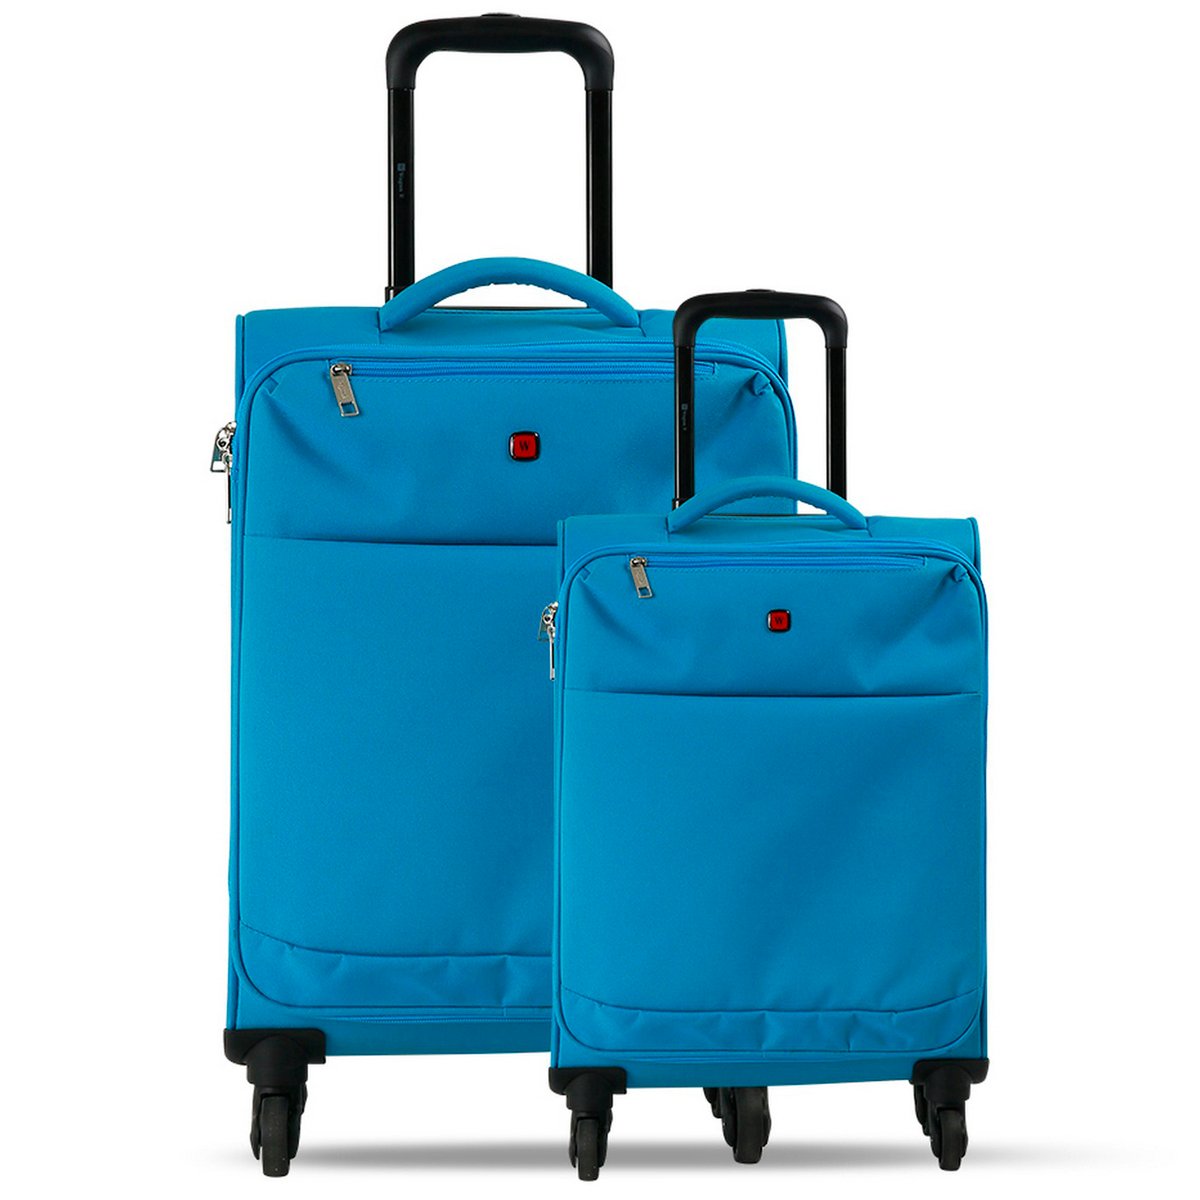 Wagon-R Travel Bag Foldable 7739